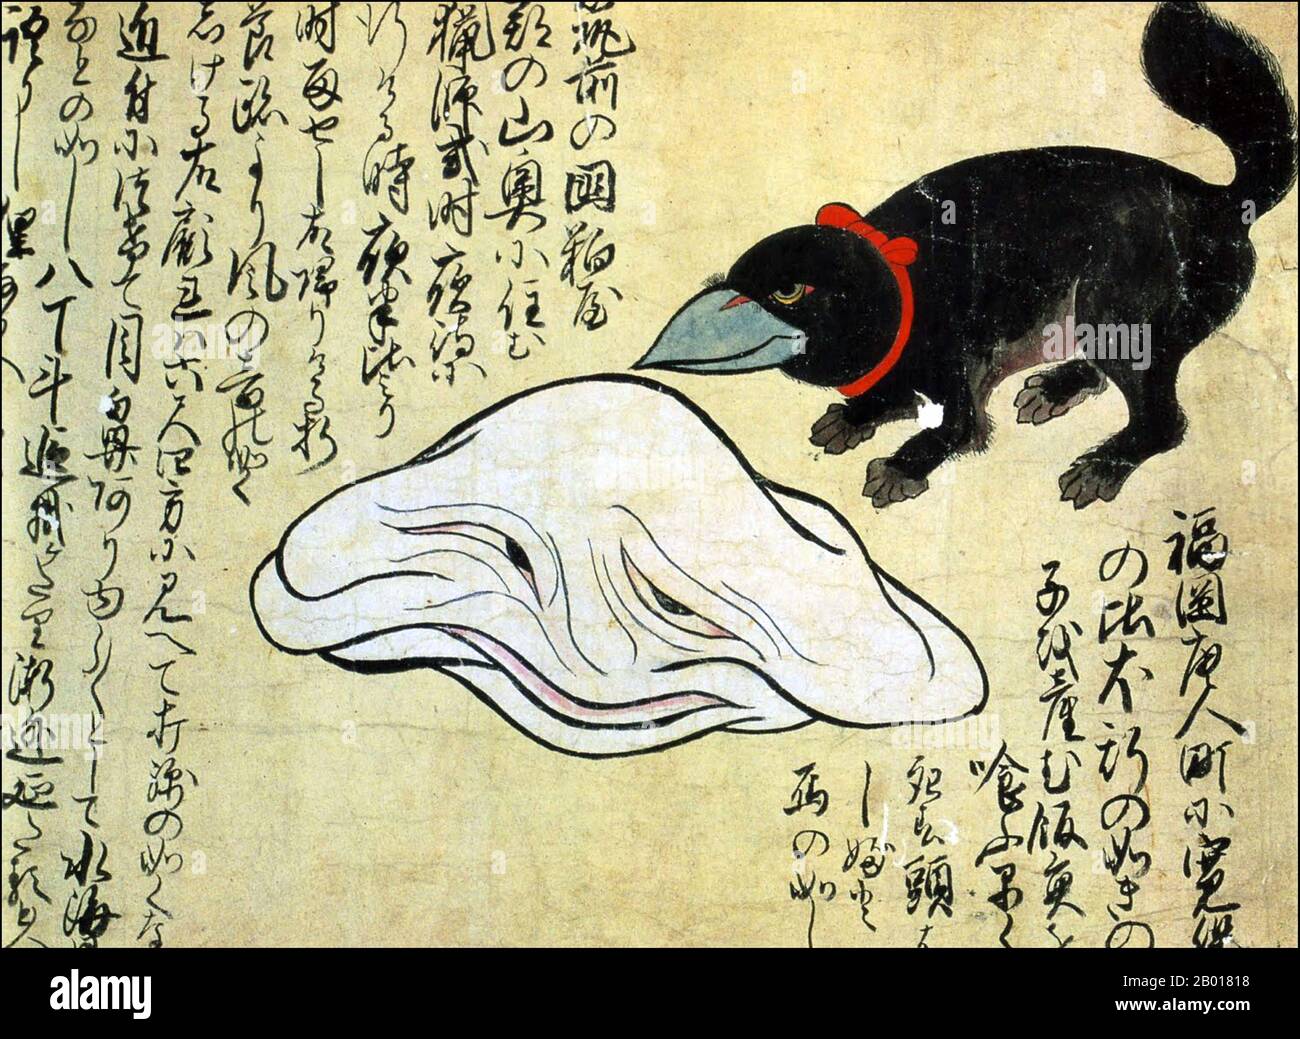 Japon : un monstre blanc et un monstre hybride oiseau-chien.Du Kaikidan Ekotoba Monster Scroll, au milieu du 19th siècle.La créature noire à droite est née par un chien qui s'est accouplé avec un oiseau dans la ville de Fukuoka au début de 1740s.À côté de l'hybride oiseau-chien se trouve un monstre blanc amorphe, également rencontré à Fukuoka, qui aurait mesuré environ 180 centimètres (6 pi) de travers.Les gens à l'époque croyaient que cette créature était un Tanuki (chien de raton laveur japonais) qui avait changé de forme.Le Kaikidan Ekotoba est un handscroll du milieu du 19th siècle qui décrit 33 monstres légendaires et les bizarreries humaines. Banque D'Images